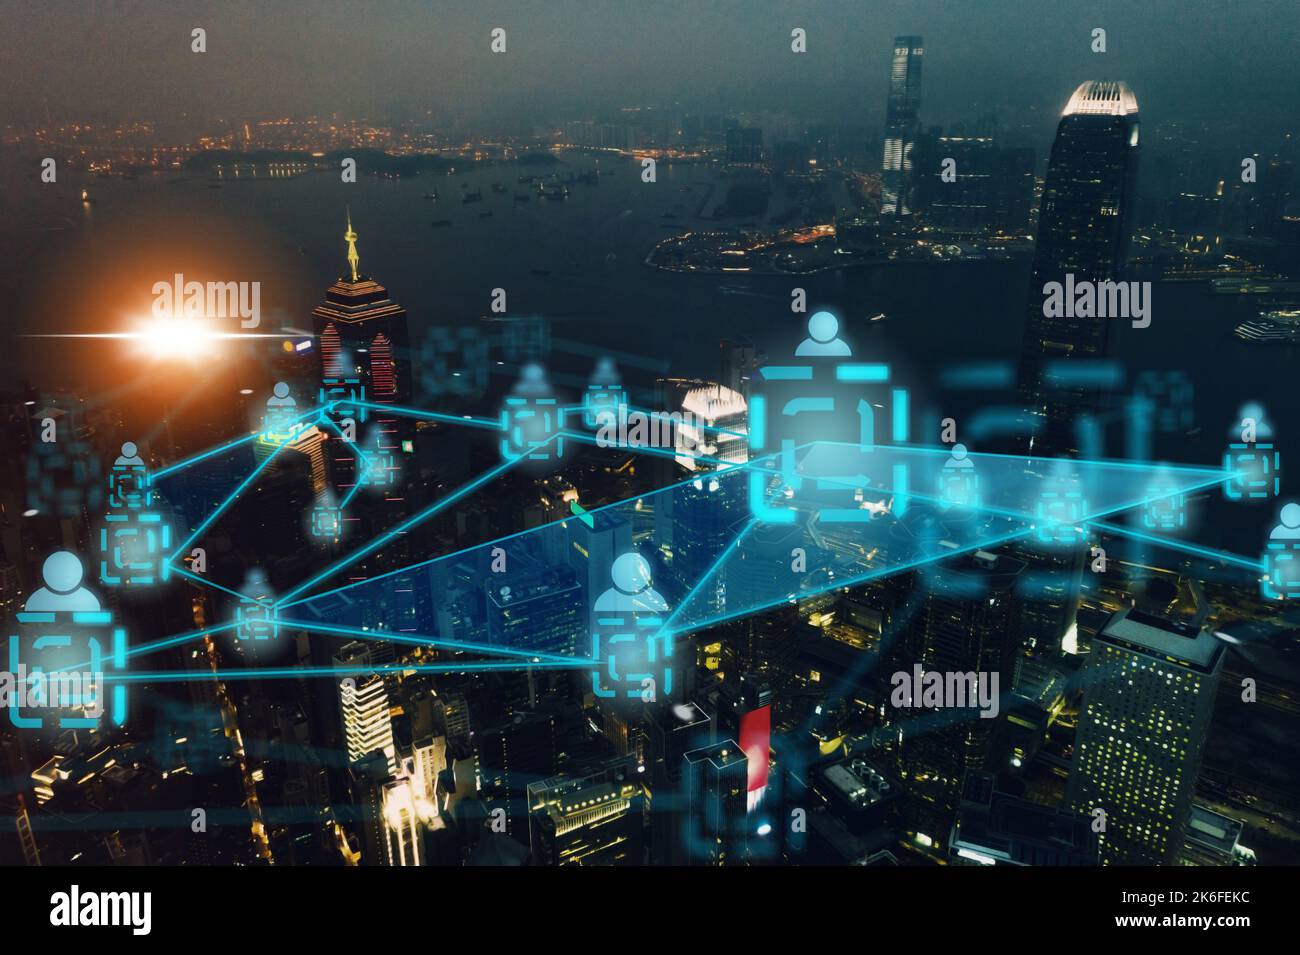 Smart City, réseau iot et cloud computing, vue aérienne des bâtiments ou gratte-ciel. Superposition, infrastructure ou connexion Web Banque D'Images